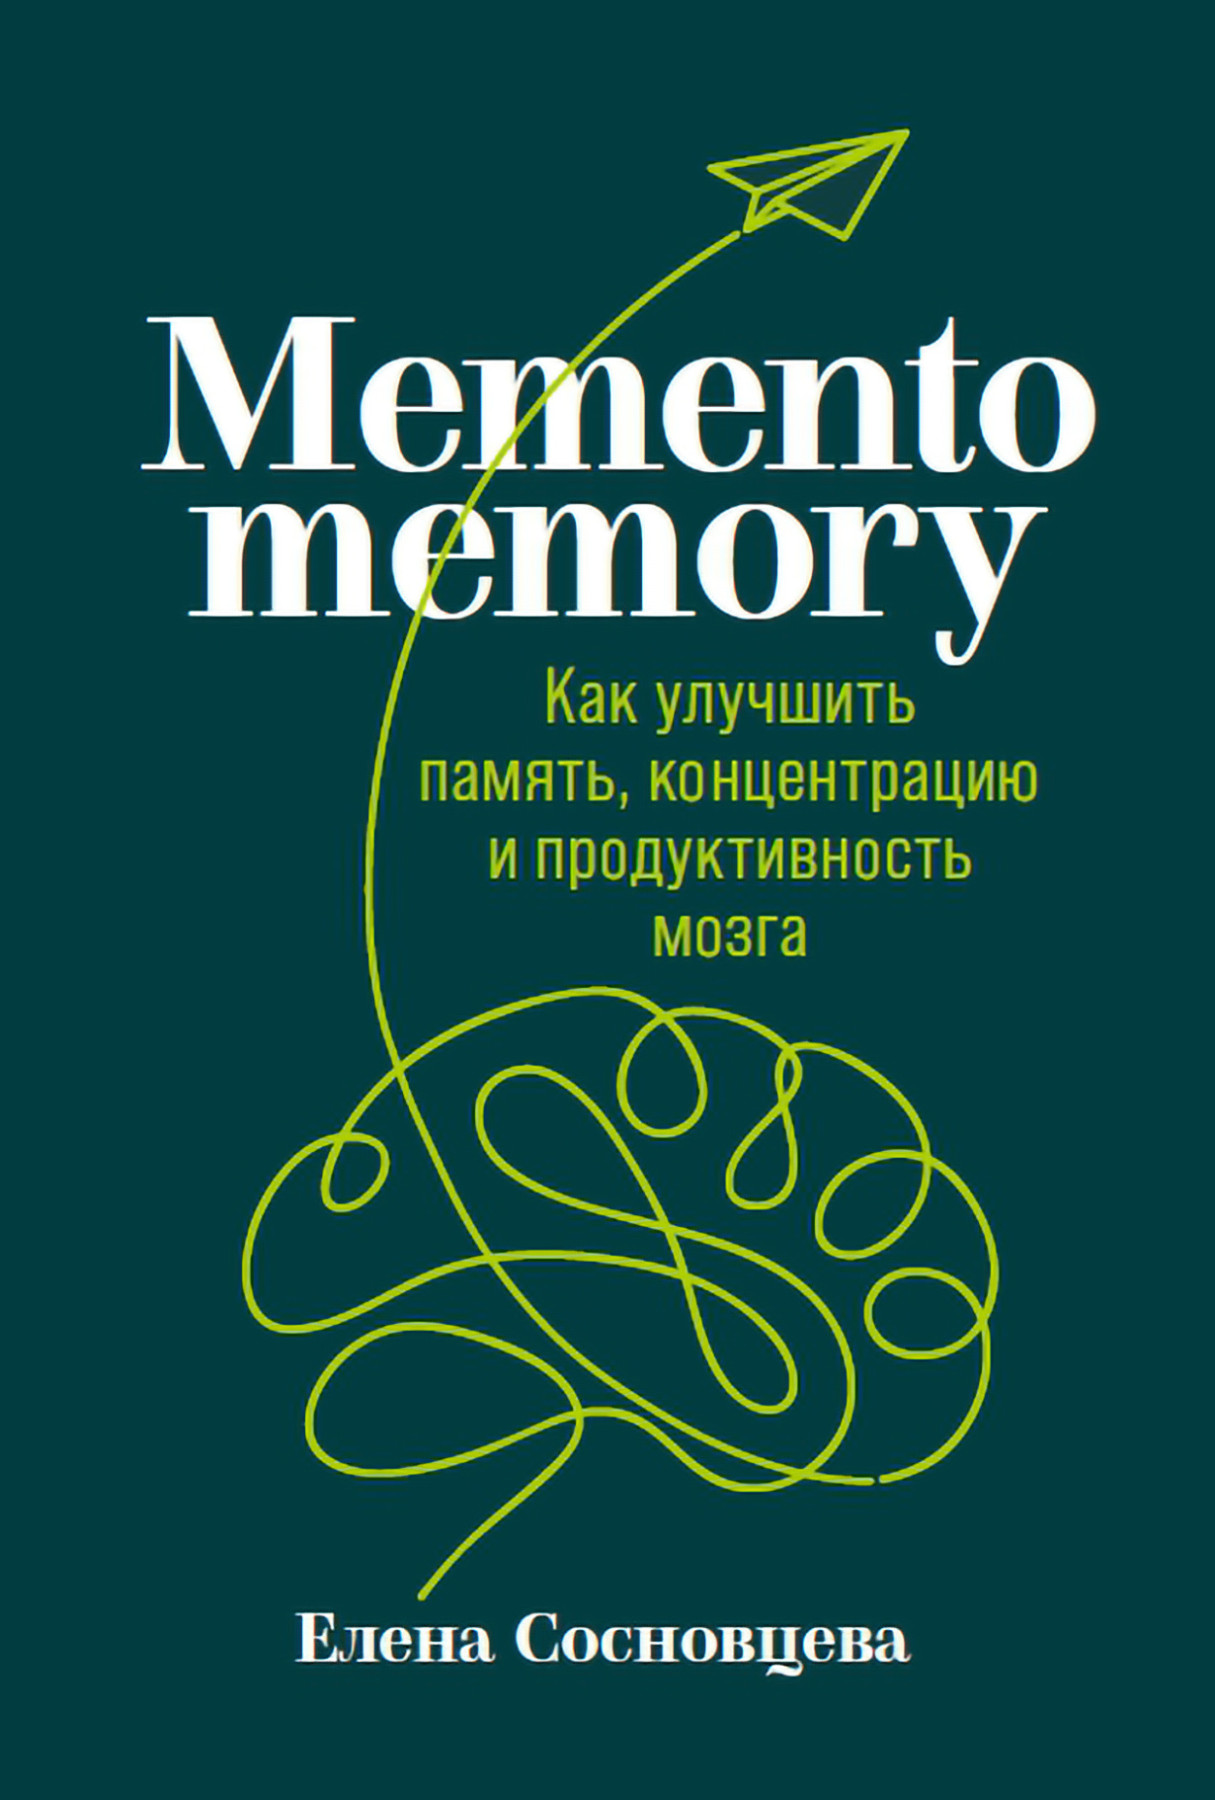 Memento memory обложка.